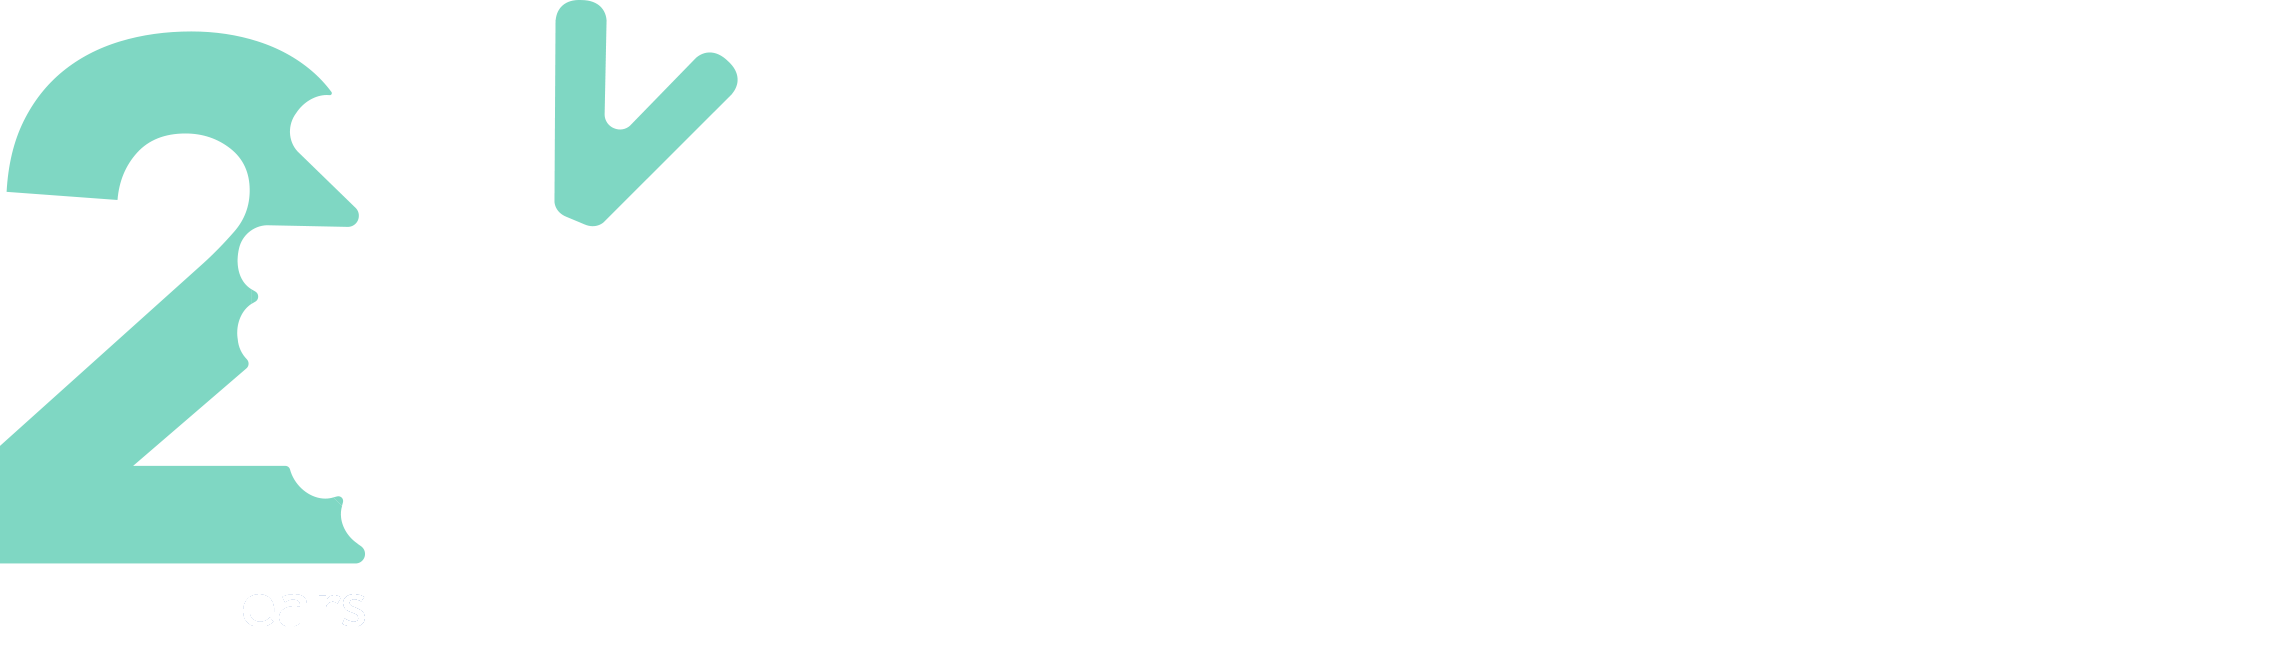 Data Vimenca Logo